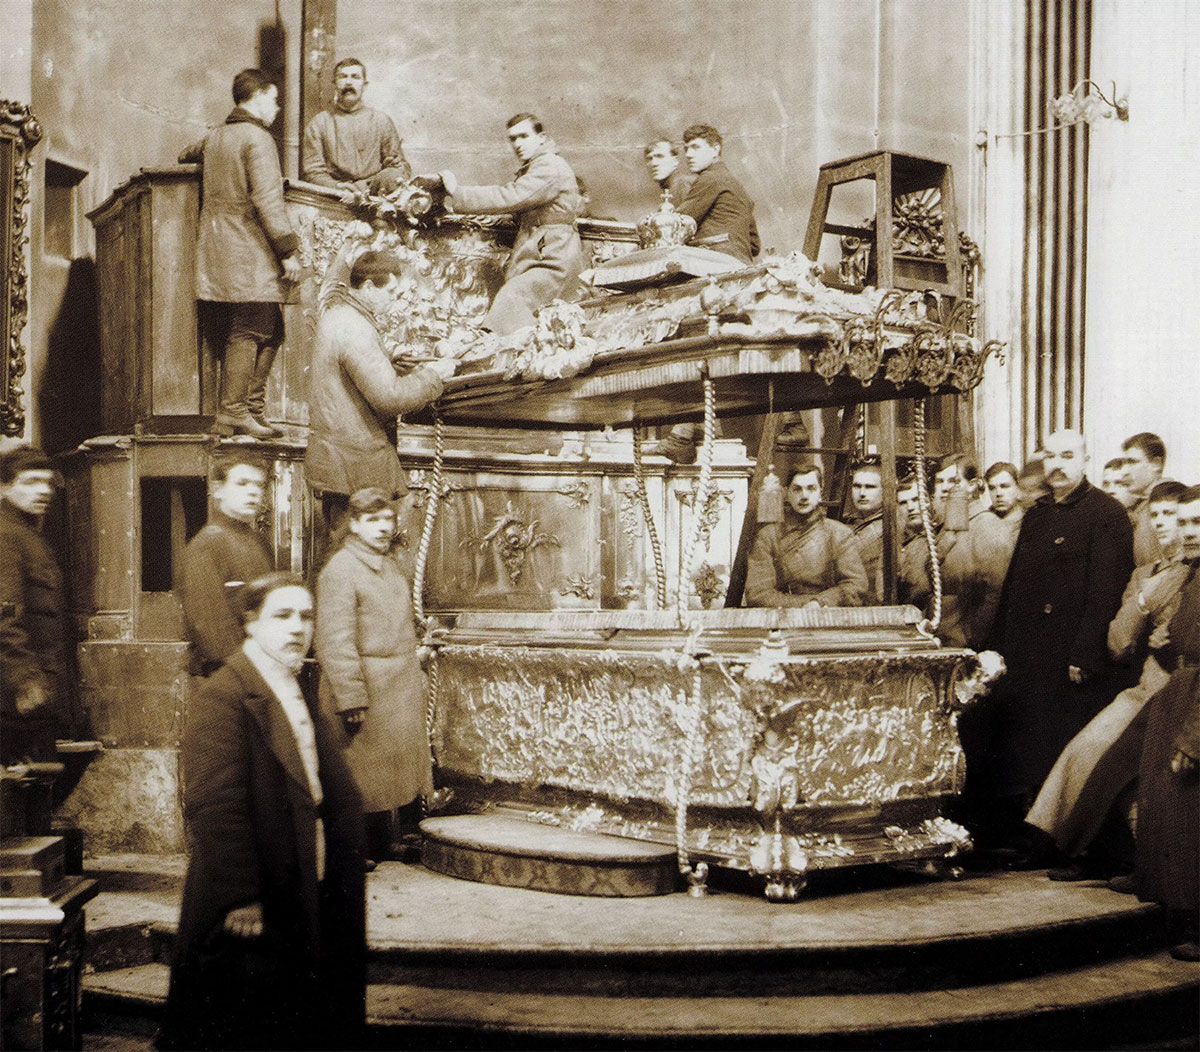 Вскрытие раки с мощами святого князя Александра Невского 12 мая 1922 года в рамках изъятия церковных ценностей в пользу голодающих Поволжья